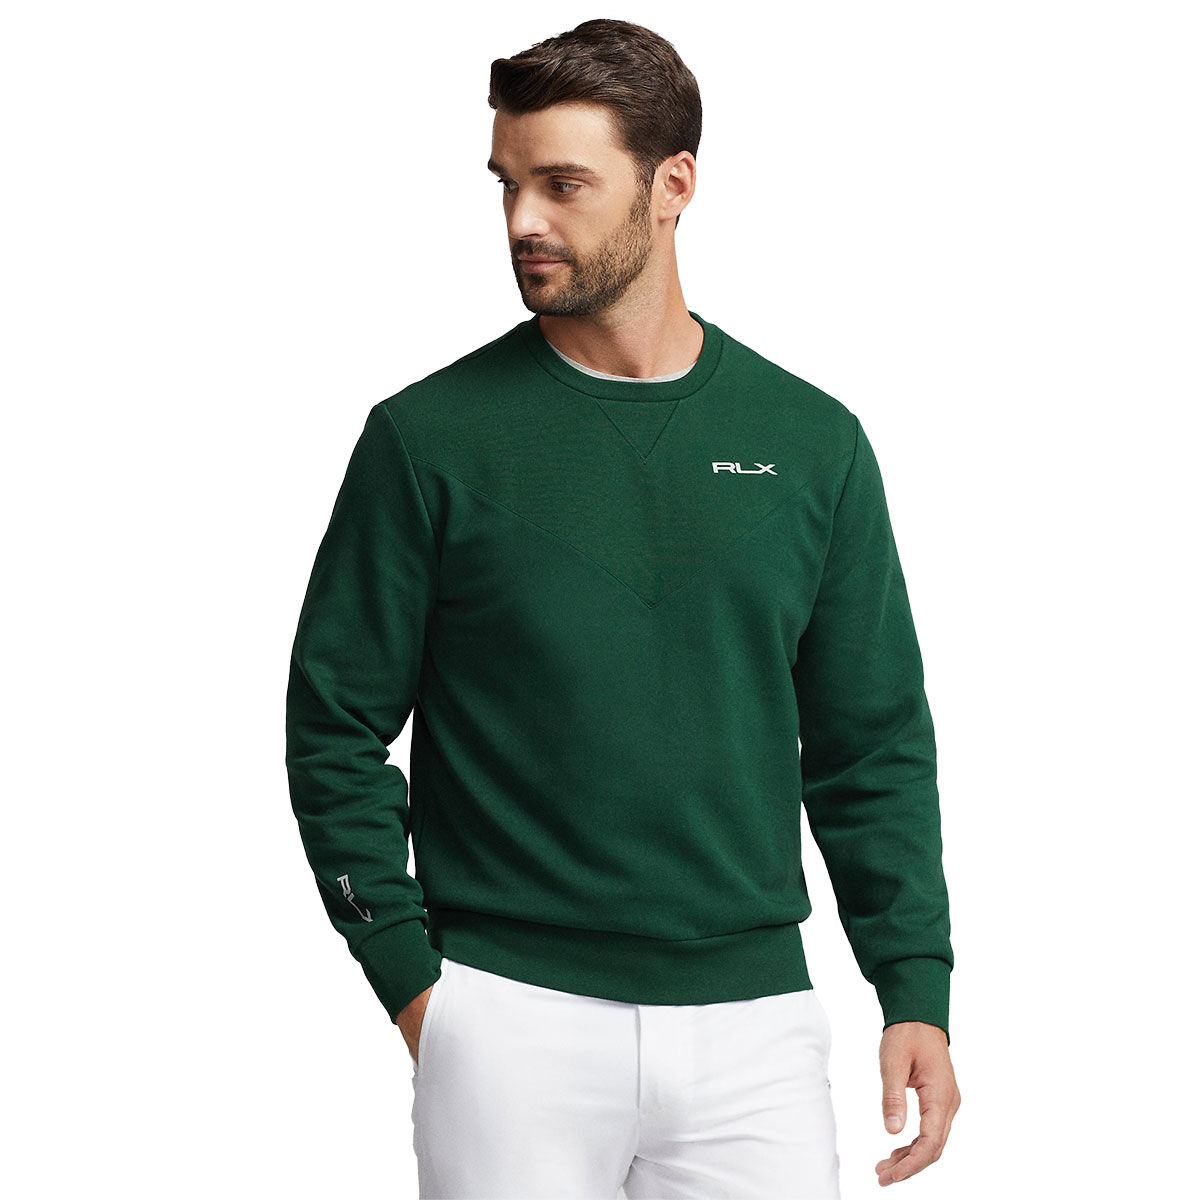 Ralph Lauren Logo Double-Knit Pullover Golf Sweater, Mens, Moss agate, Medium | American Golf